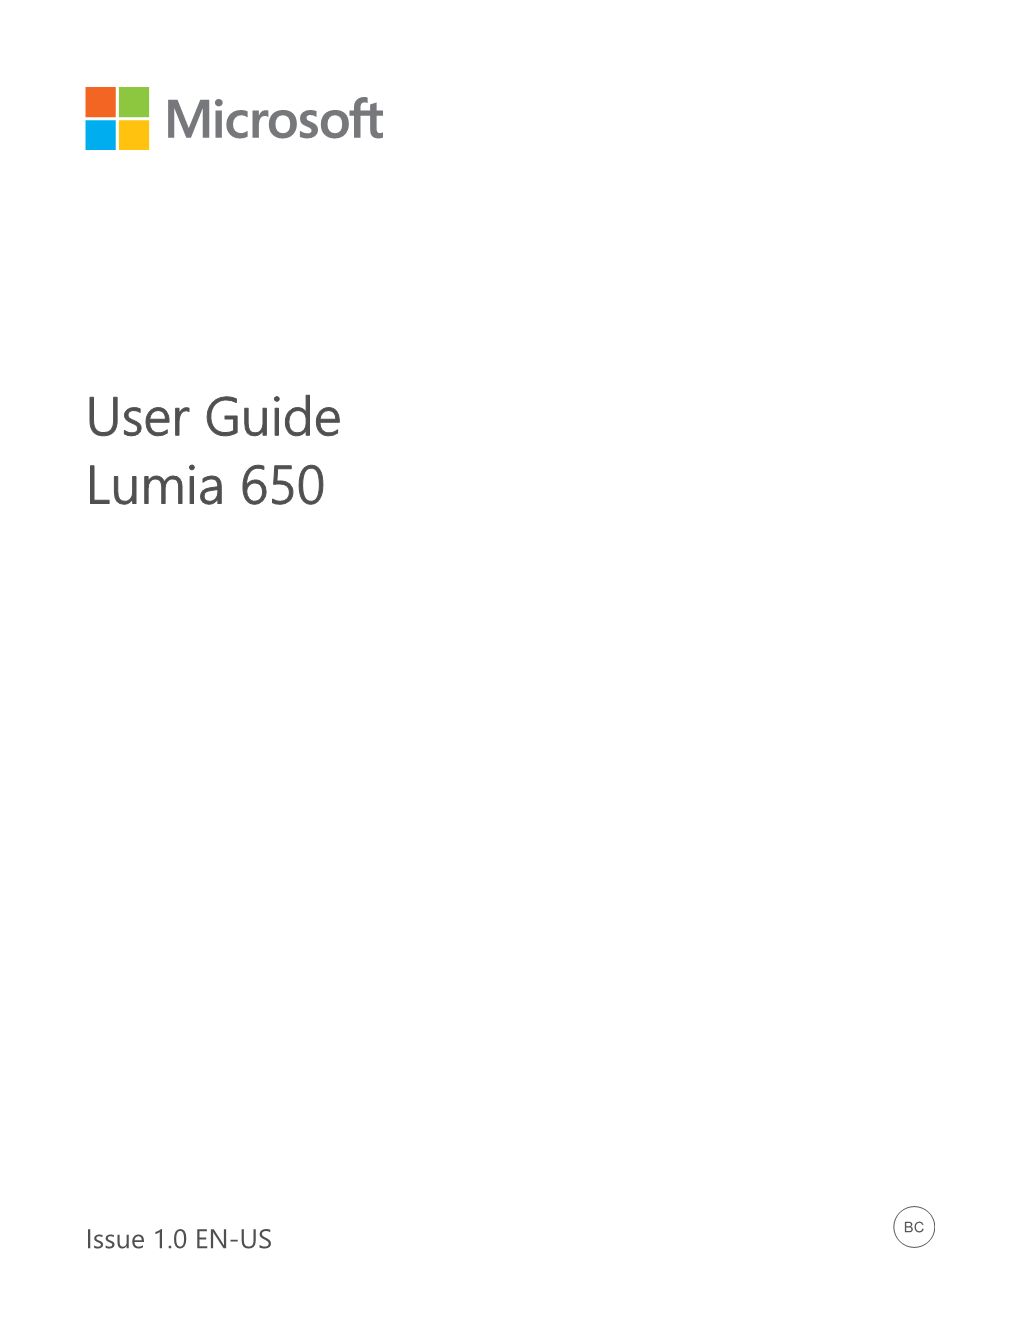 Lumia 650 User Guide